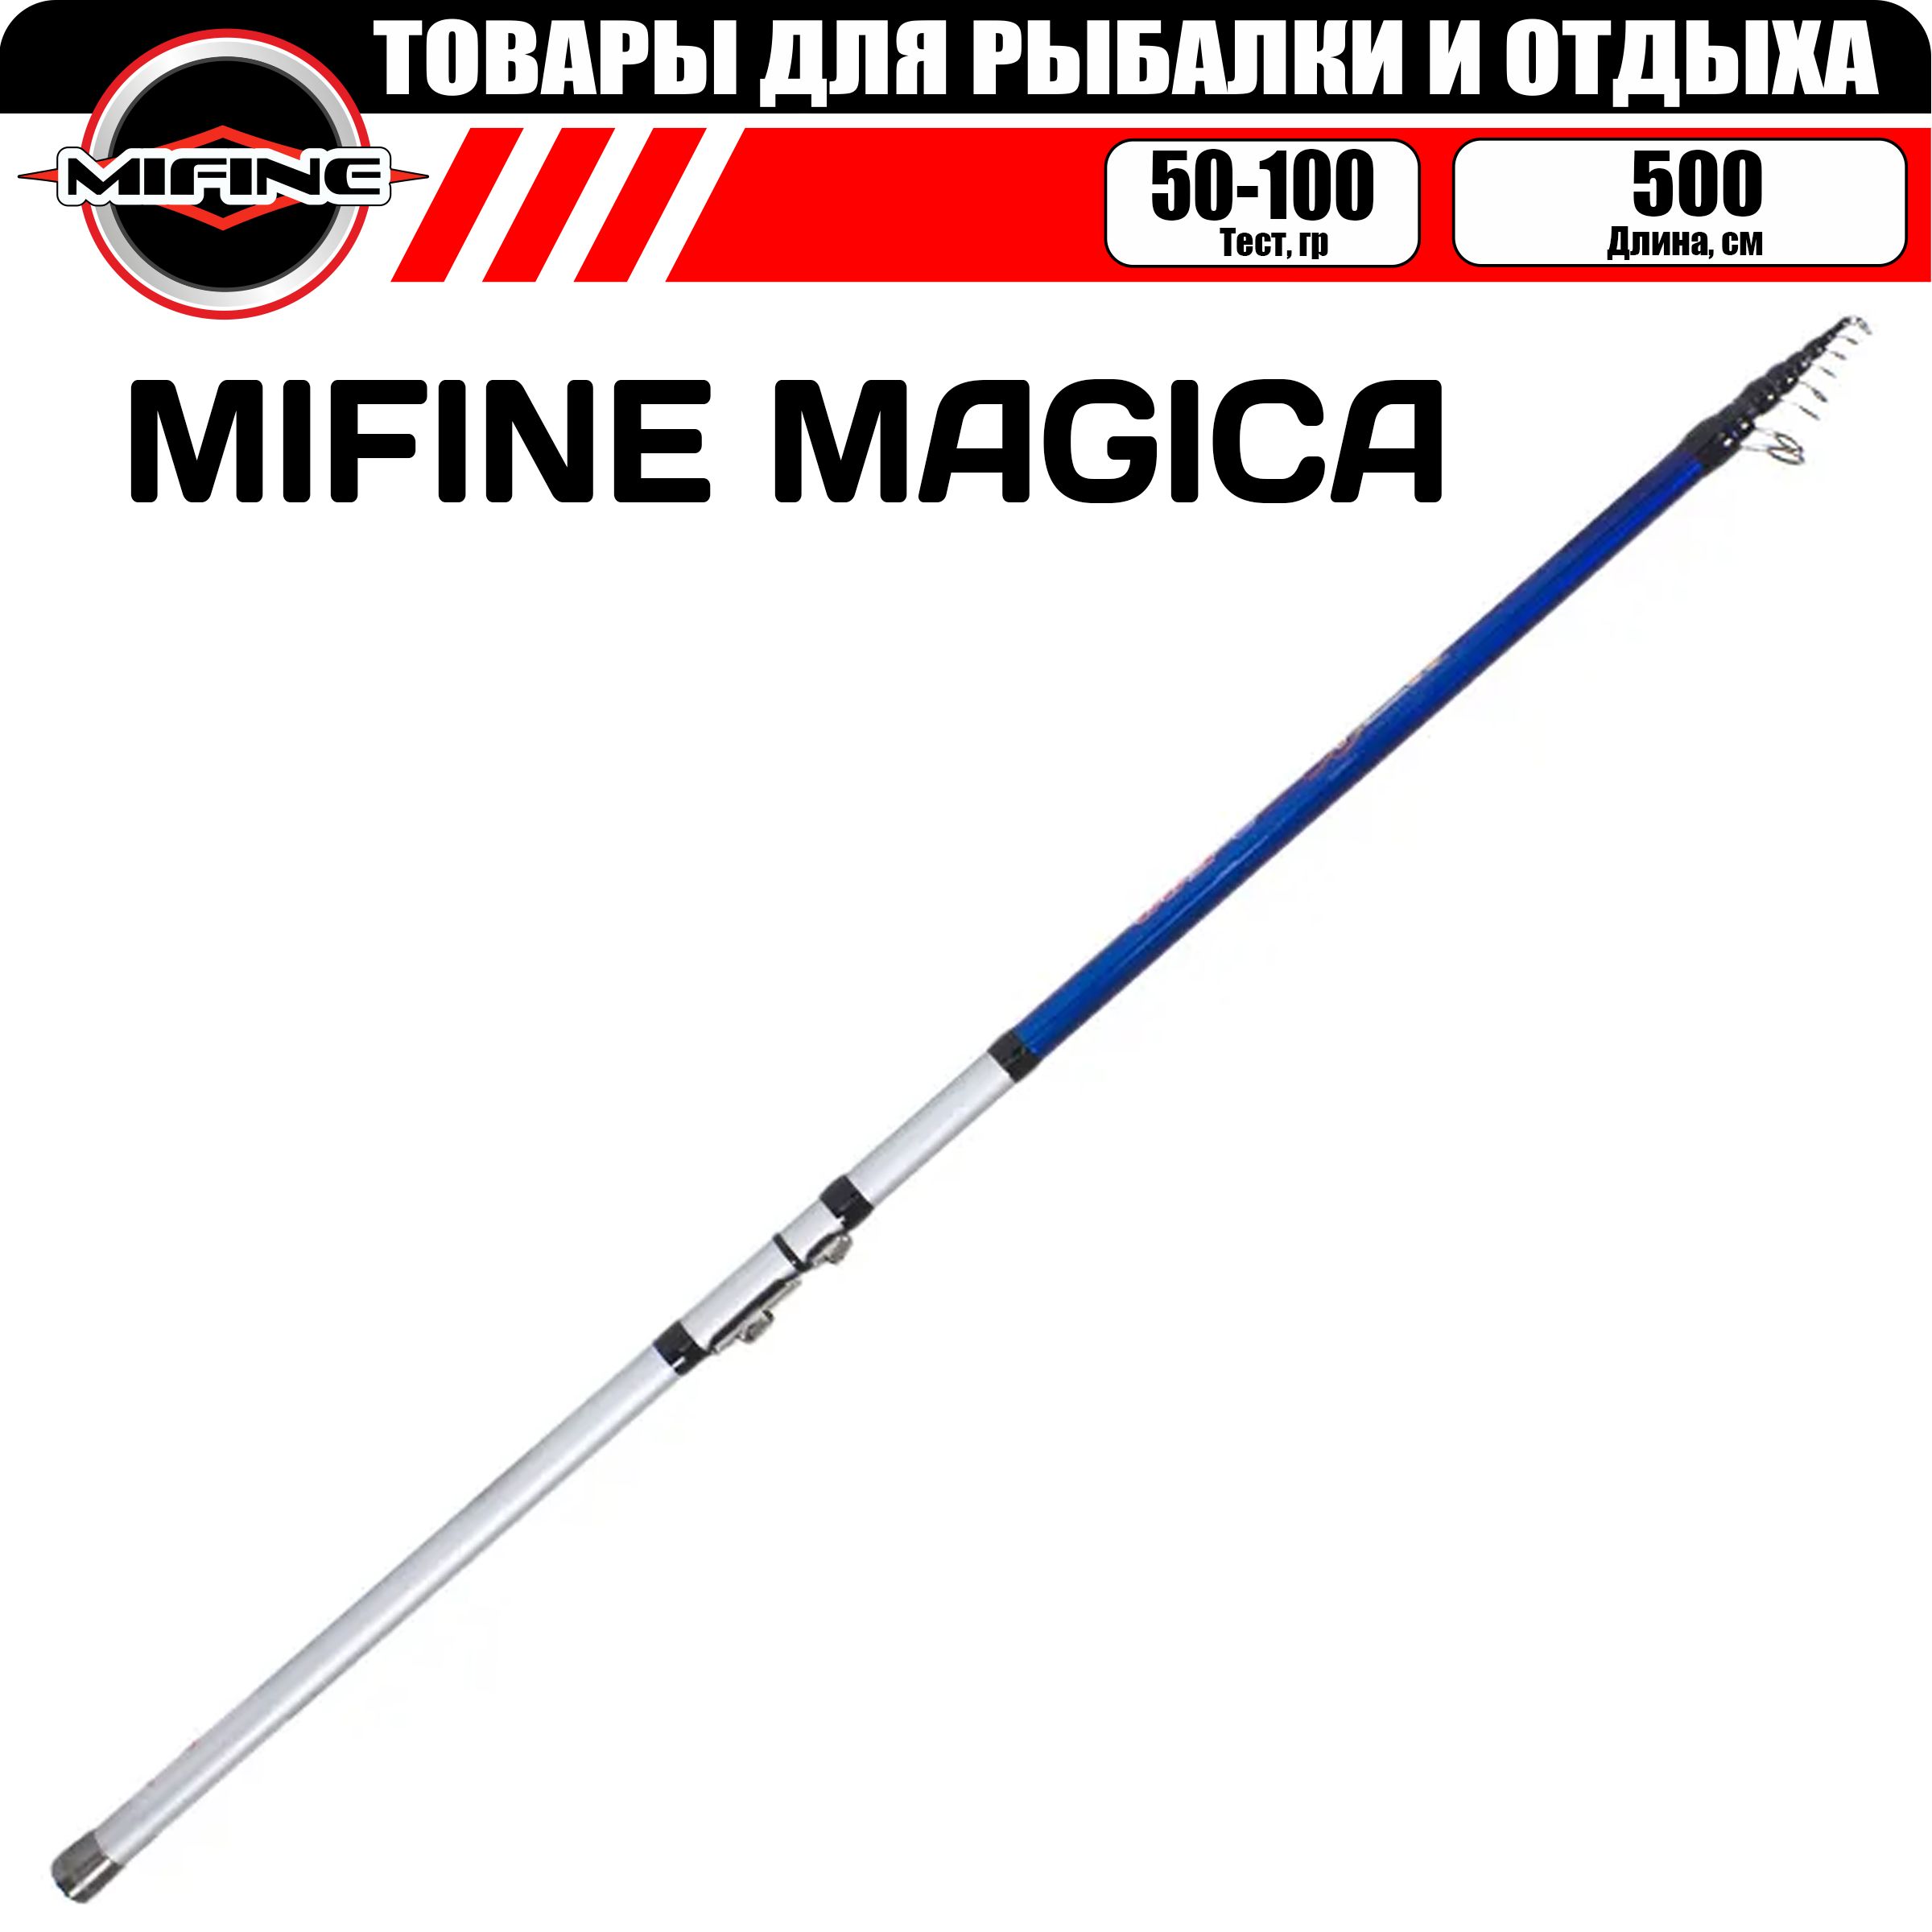 Удилище MIFINE MAGICA С,К 5,0м (50-100гр), для рыбалки, рыболовное, телескопическое